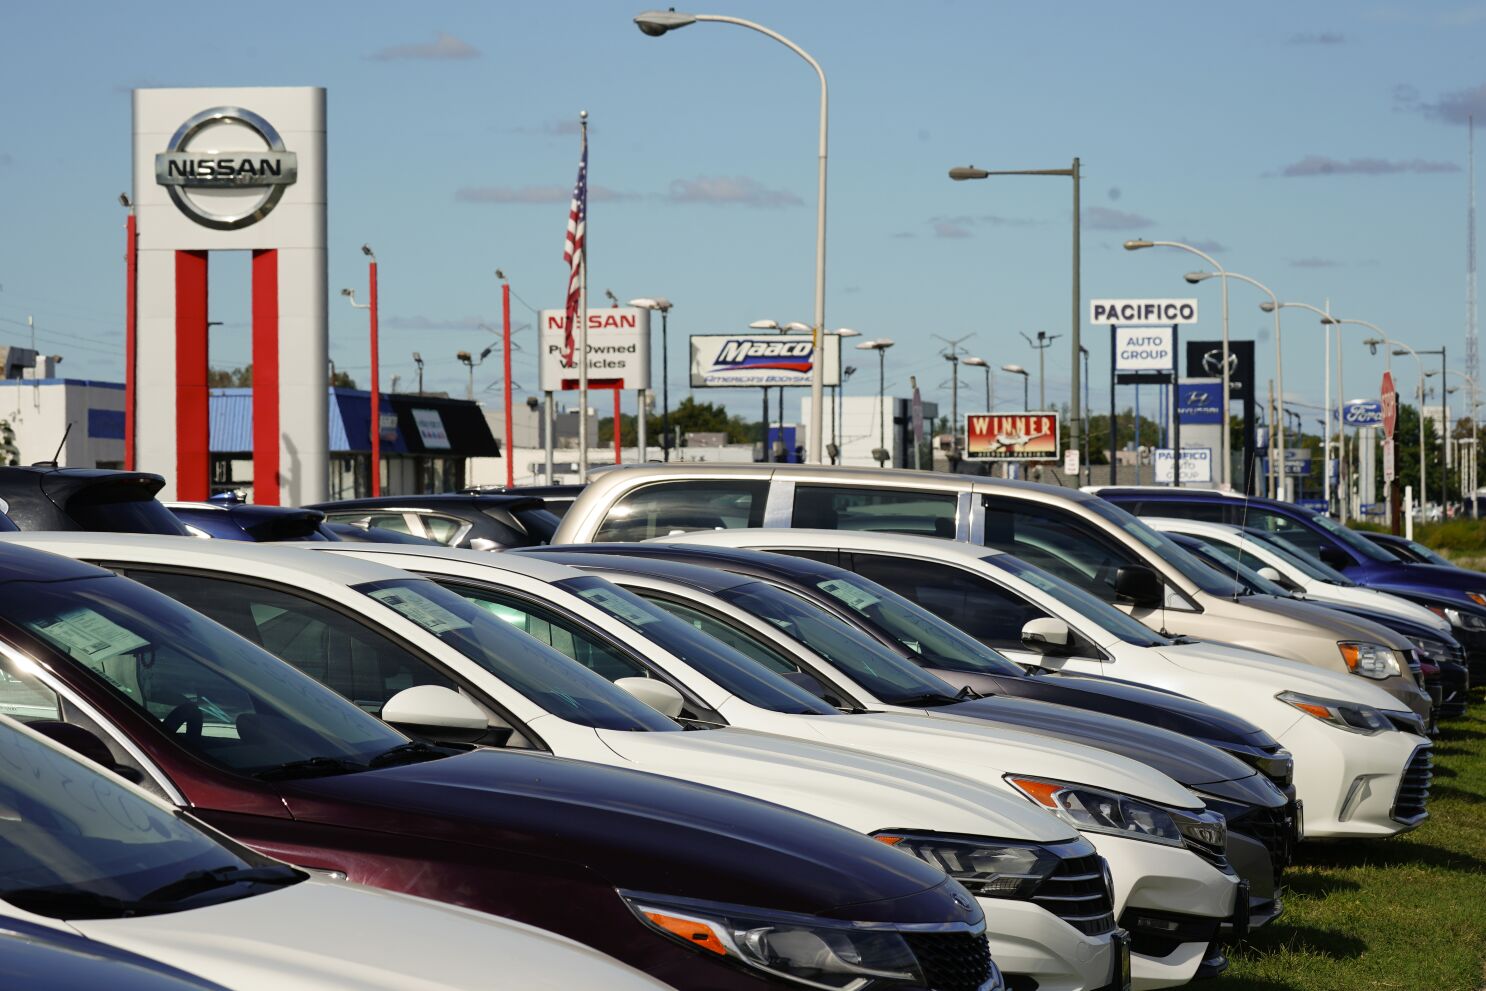 EEUU: Precios de autos finalmente empiezan a bajar - San Diego  Union-Tribune en Español